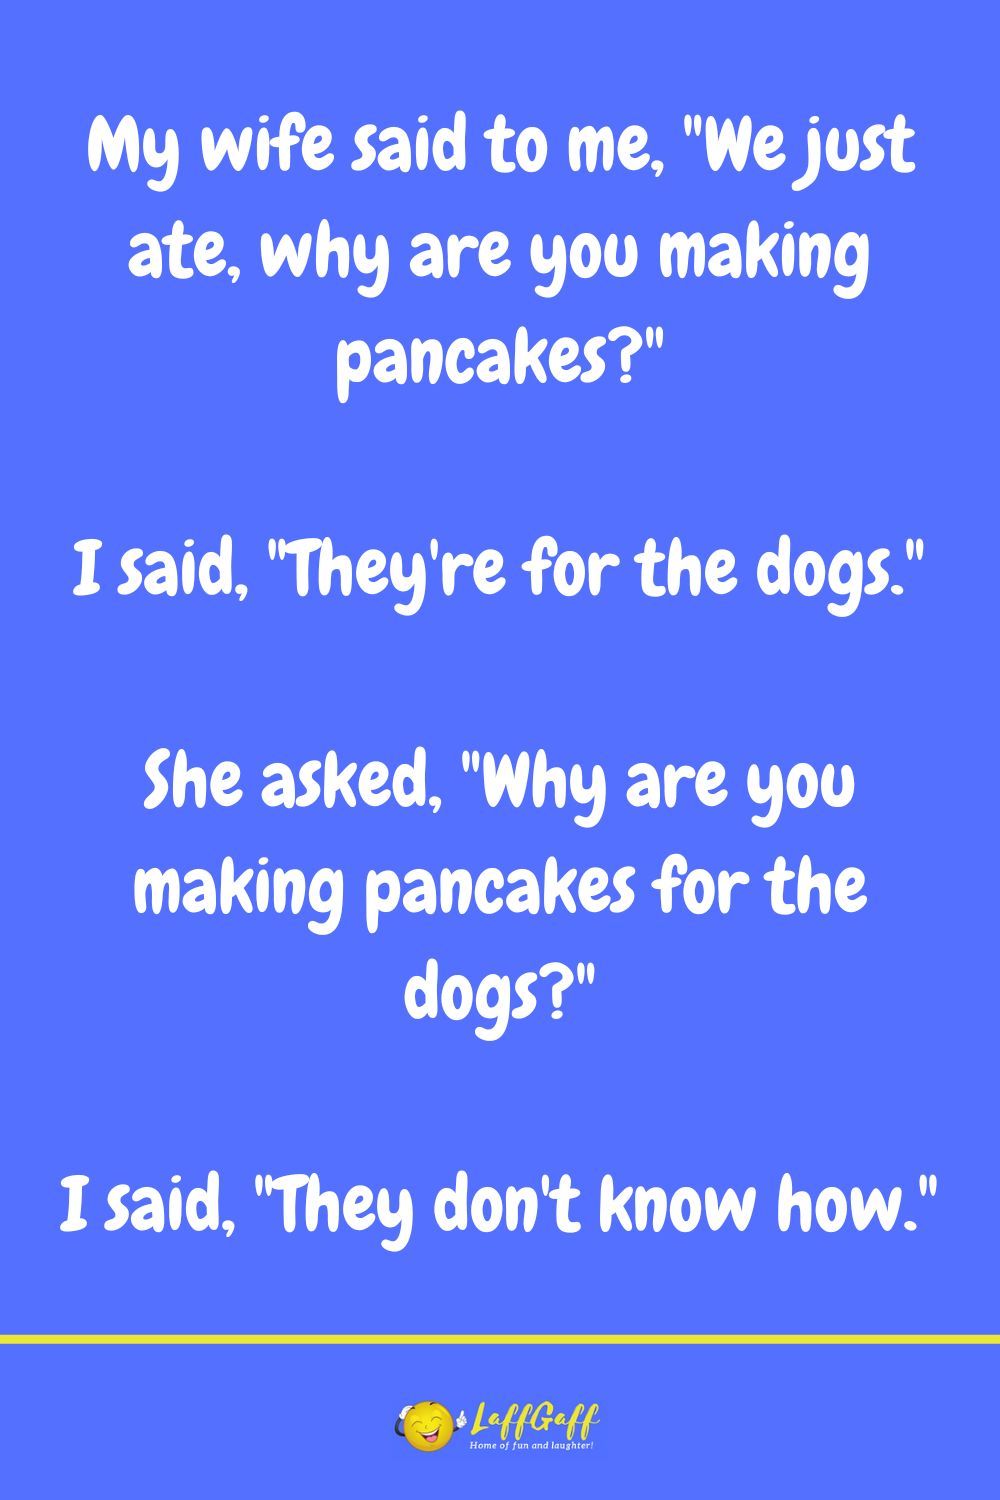 Dog pancake jokes from LaffGaff.